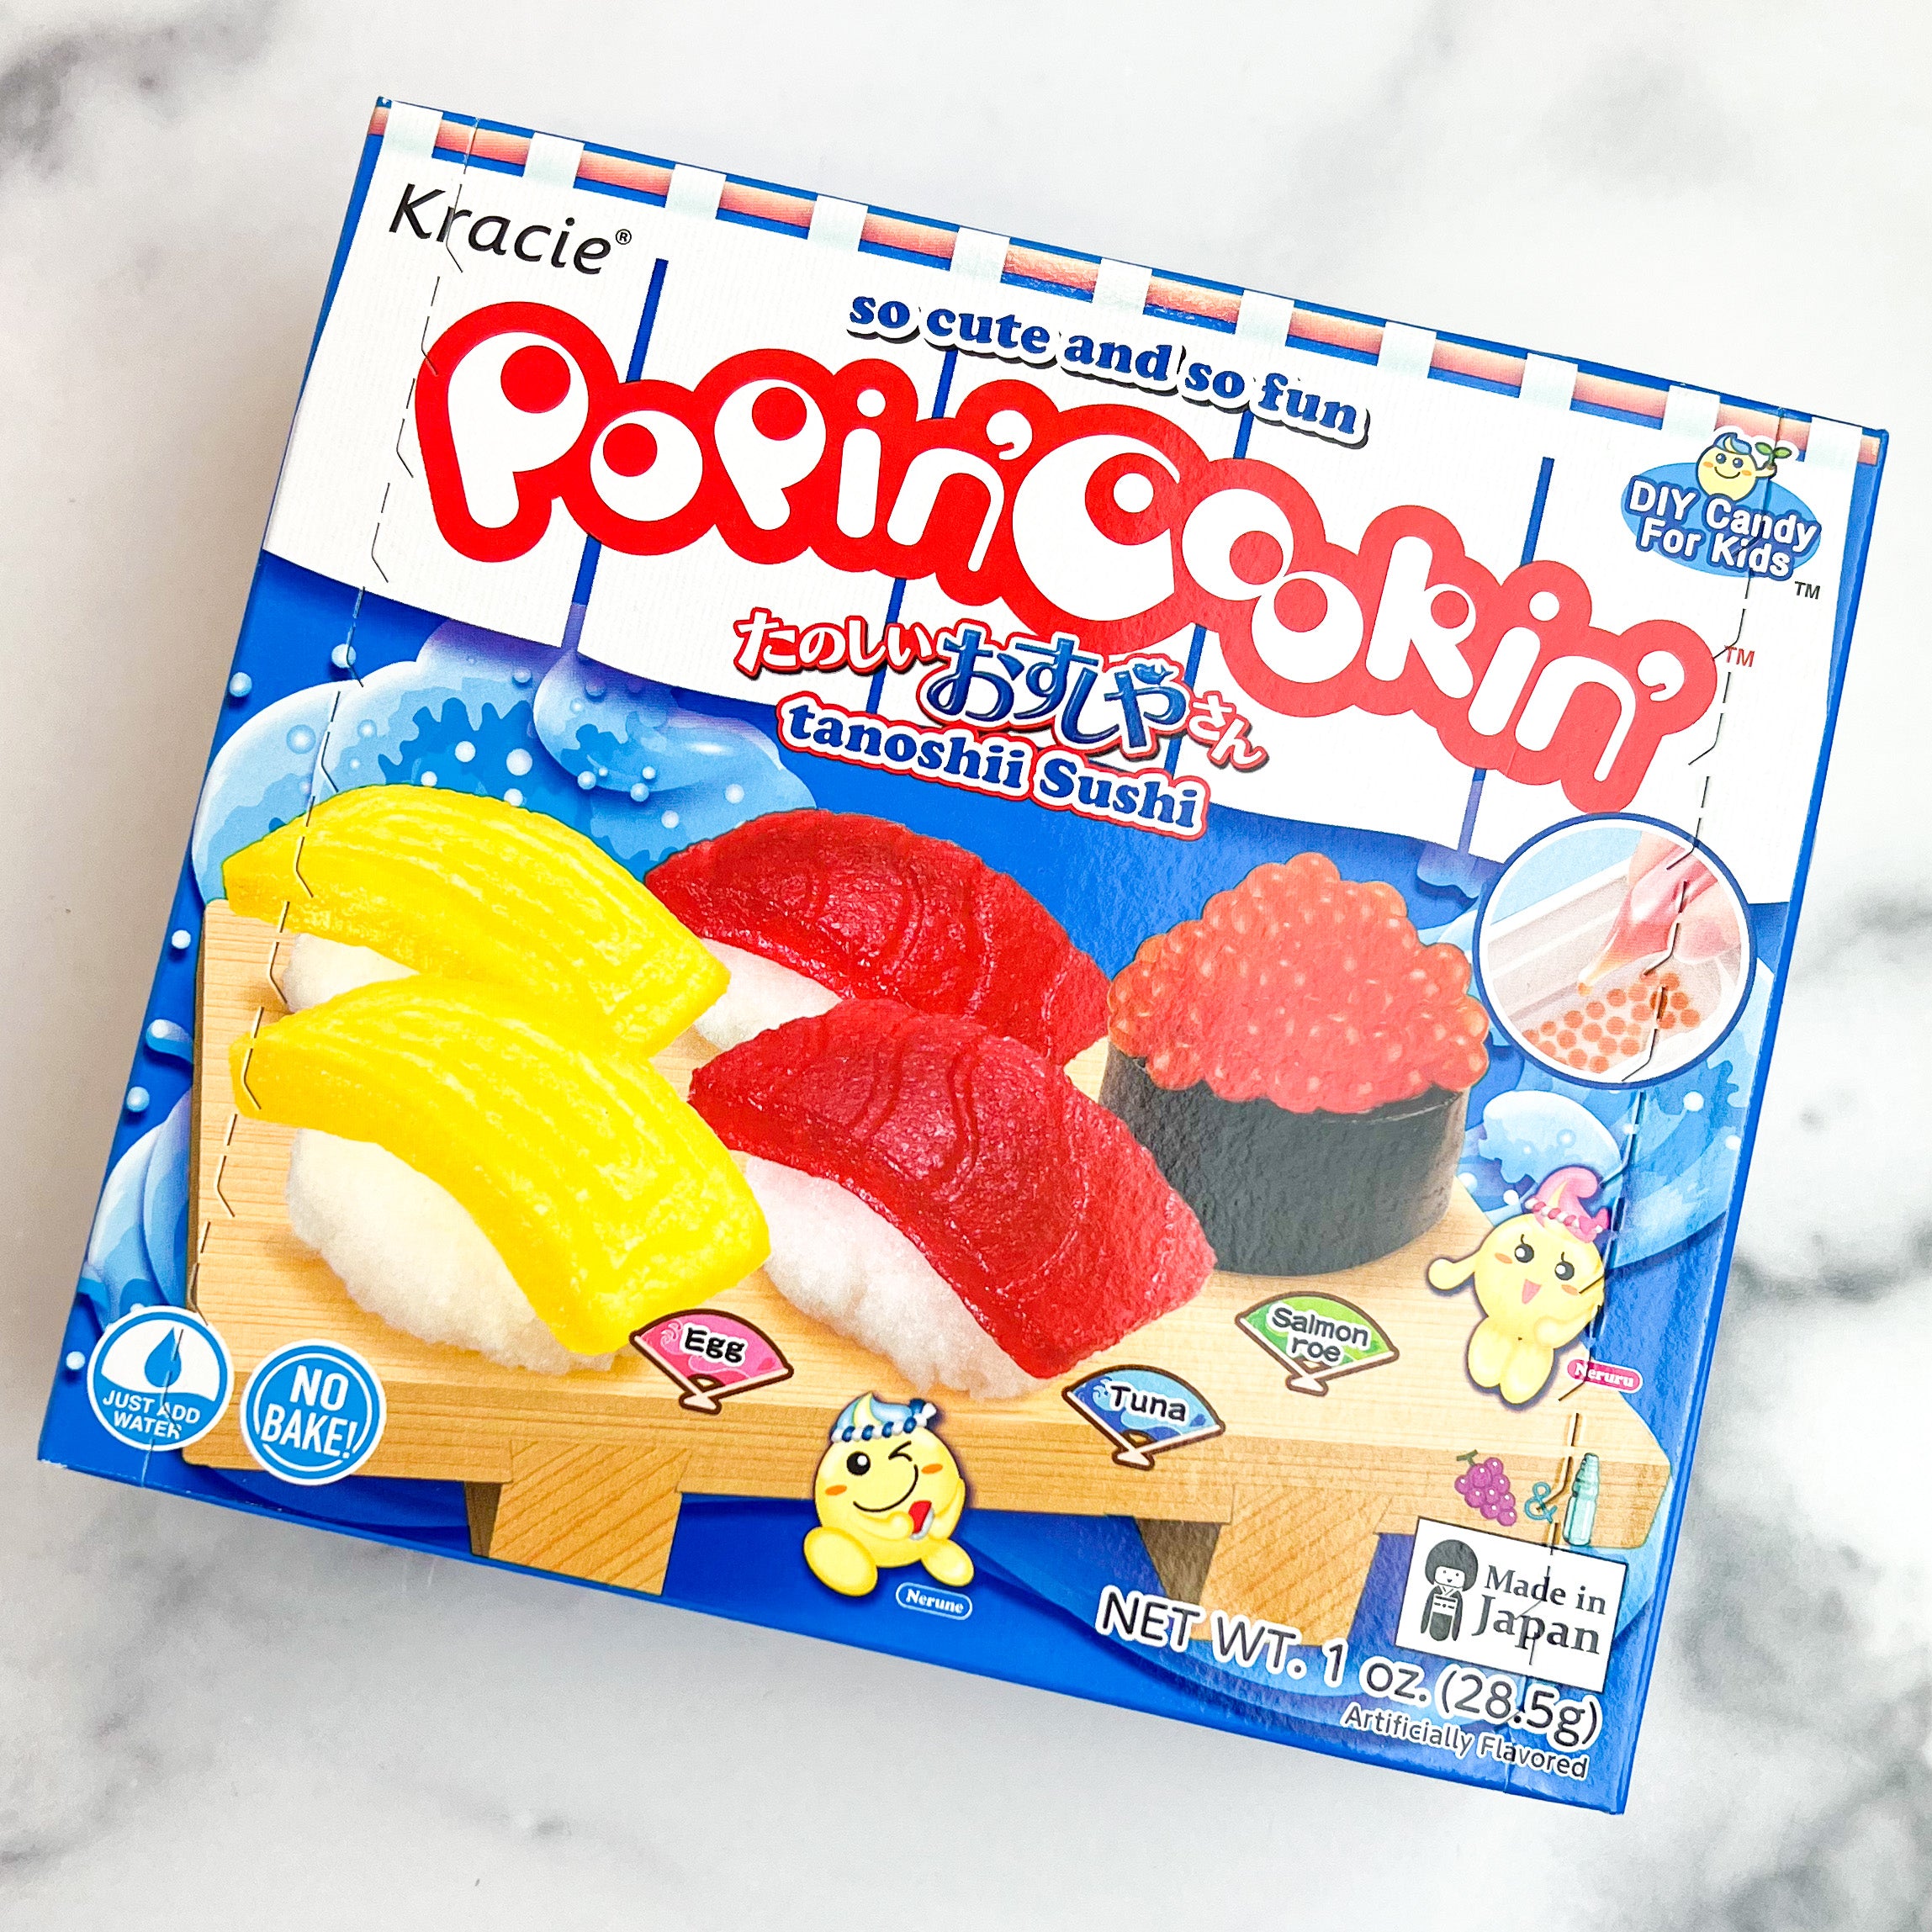 Kracie Popin Cookin Gummy Candy Sushi Making Kit Set of 5